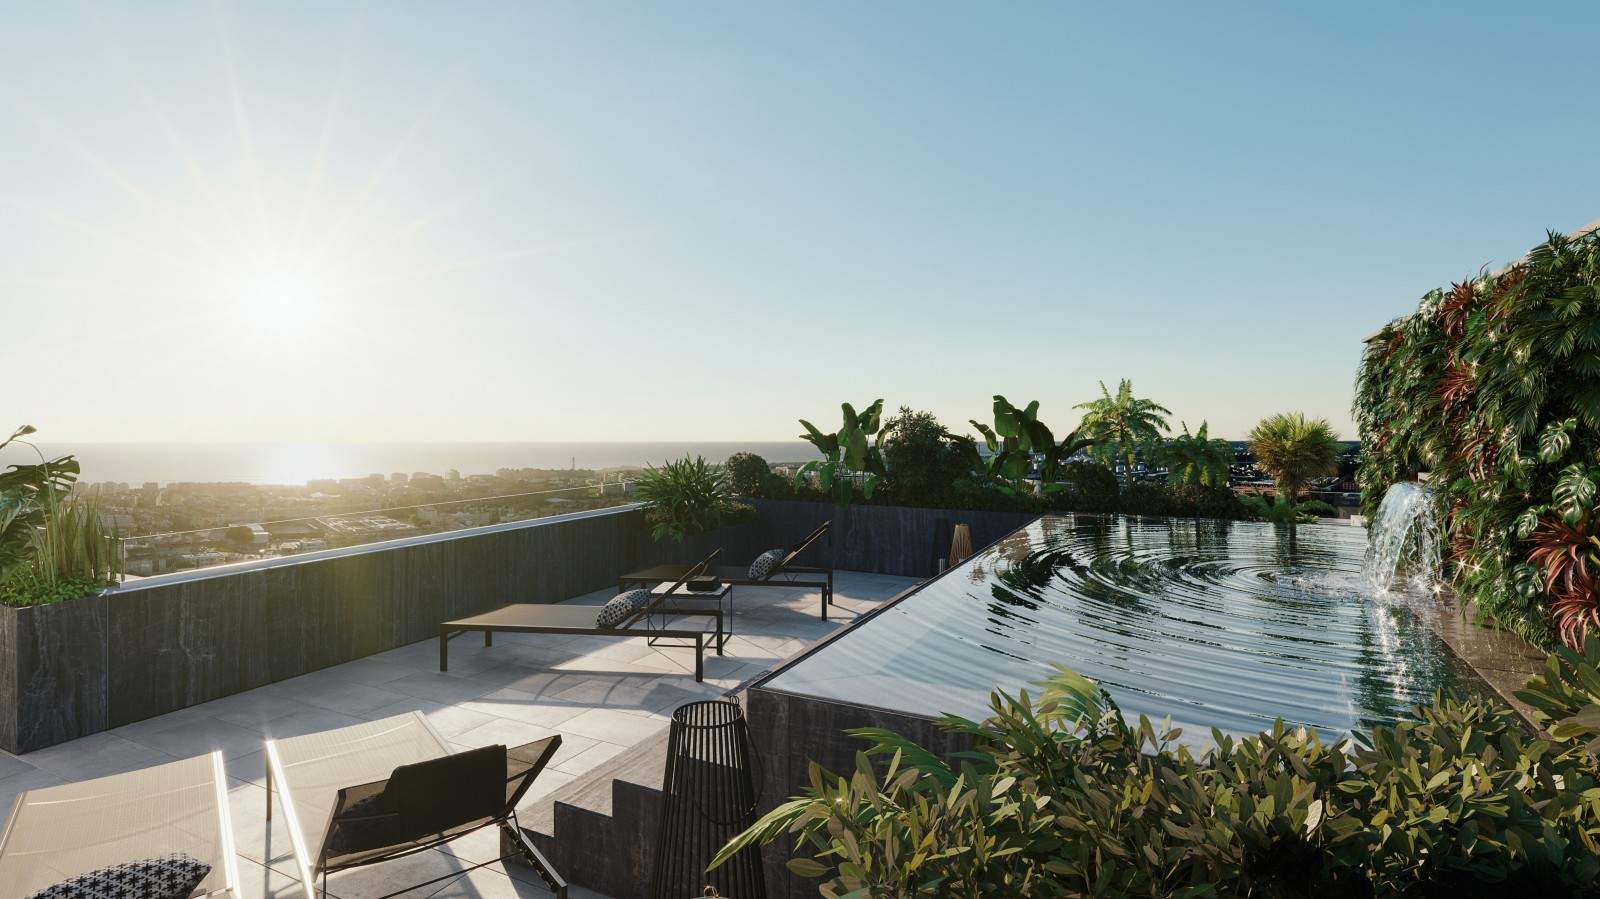 Neues Penthouse mit Terrasse und Pool, zu verkaufen, in Leça da Palmeira, Porto, Portugal_206852